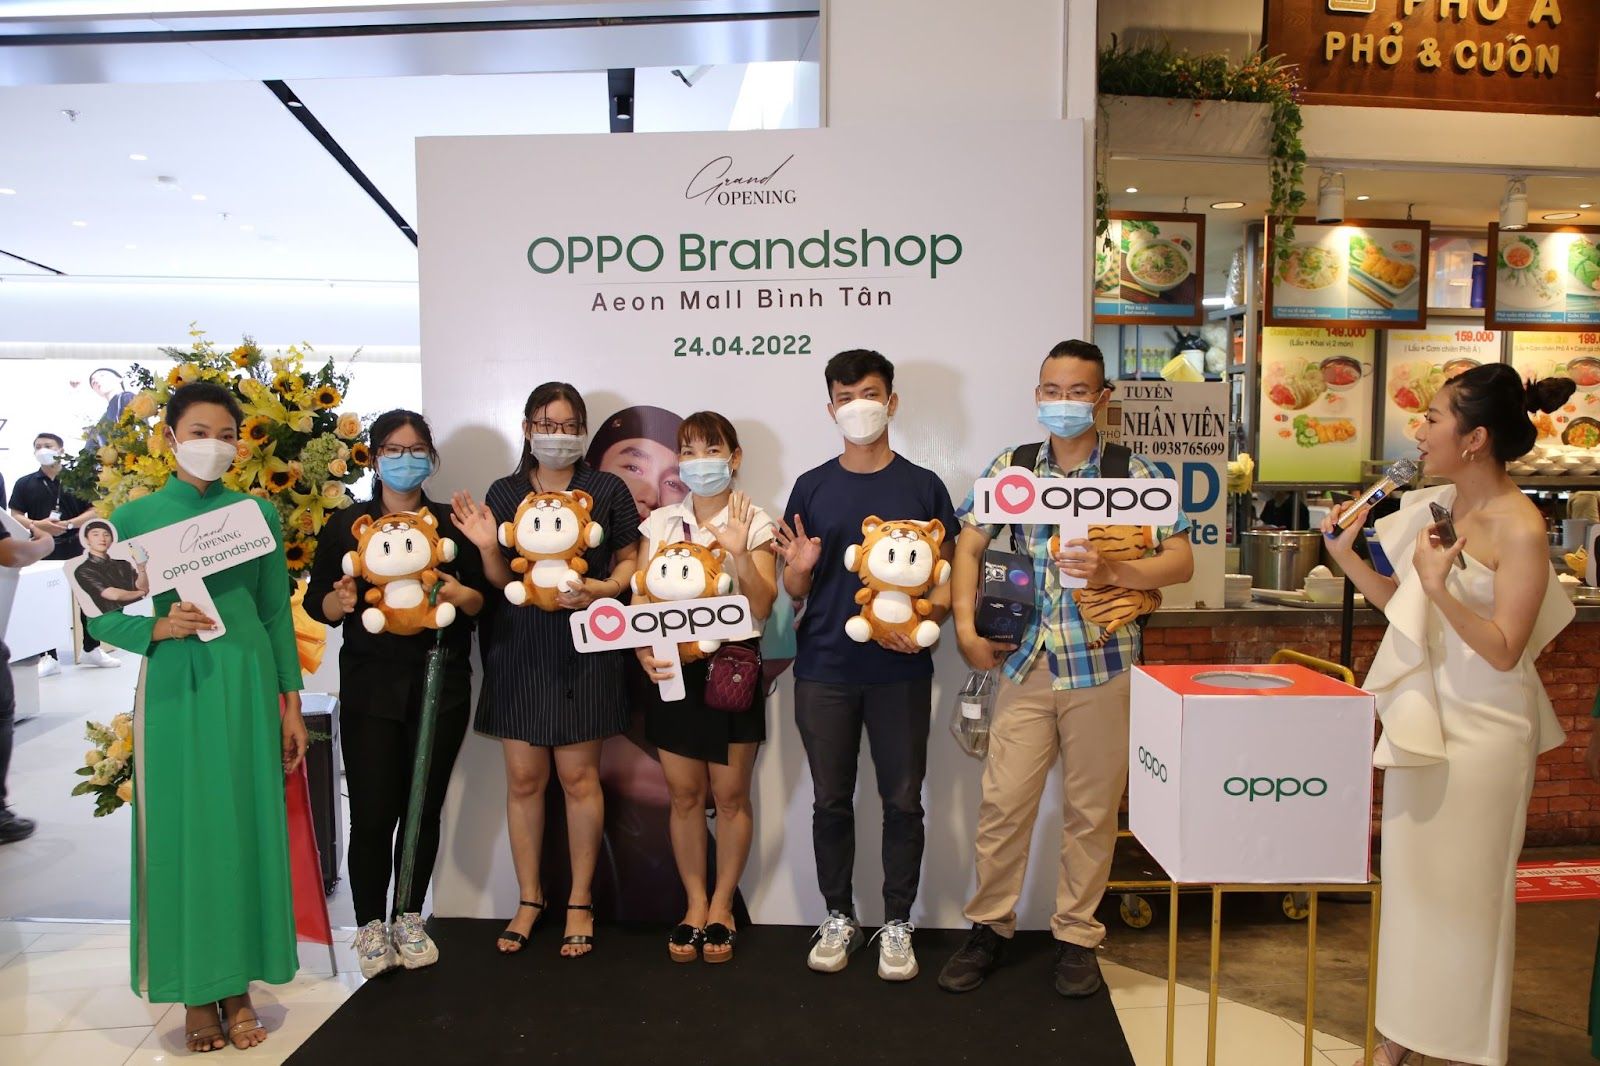 Ra mắt chuỗi OPPO Experience Store trên toàn quốc trong tháng 4.2022